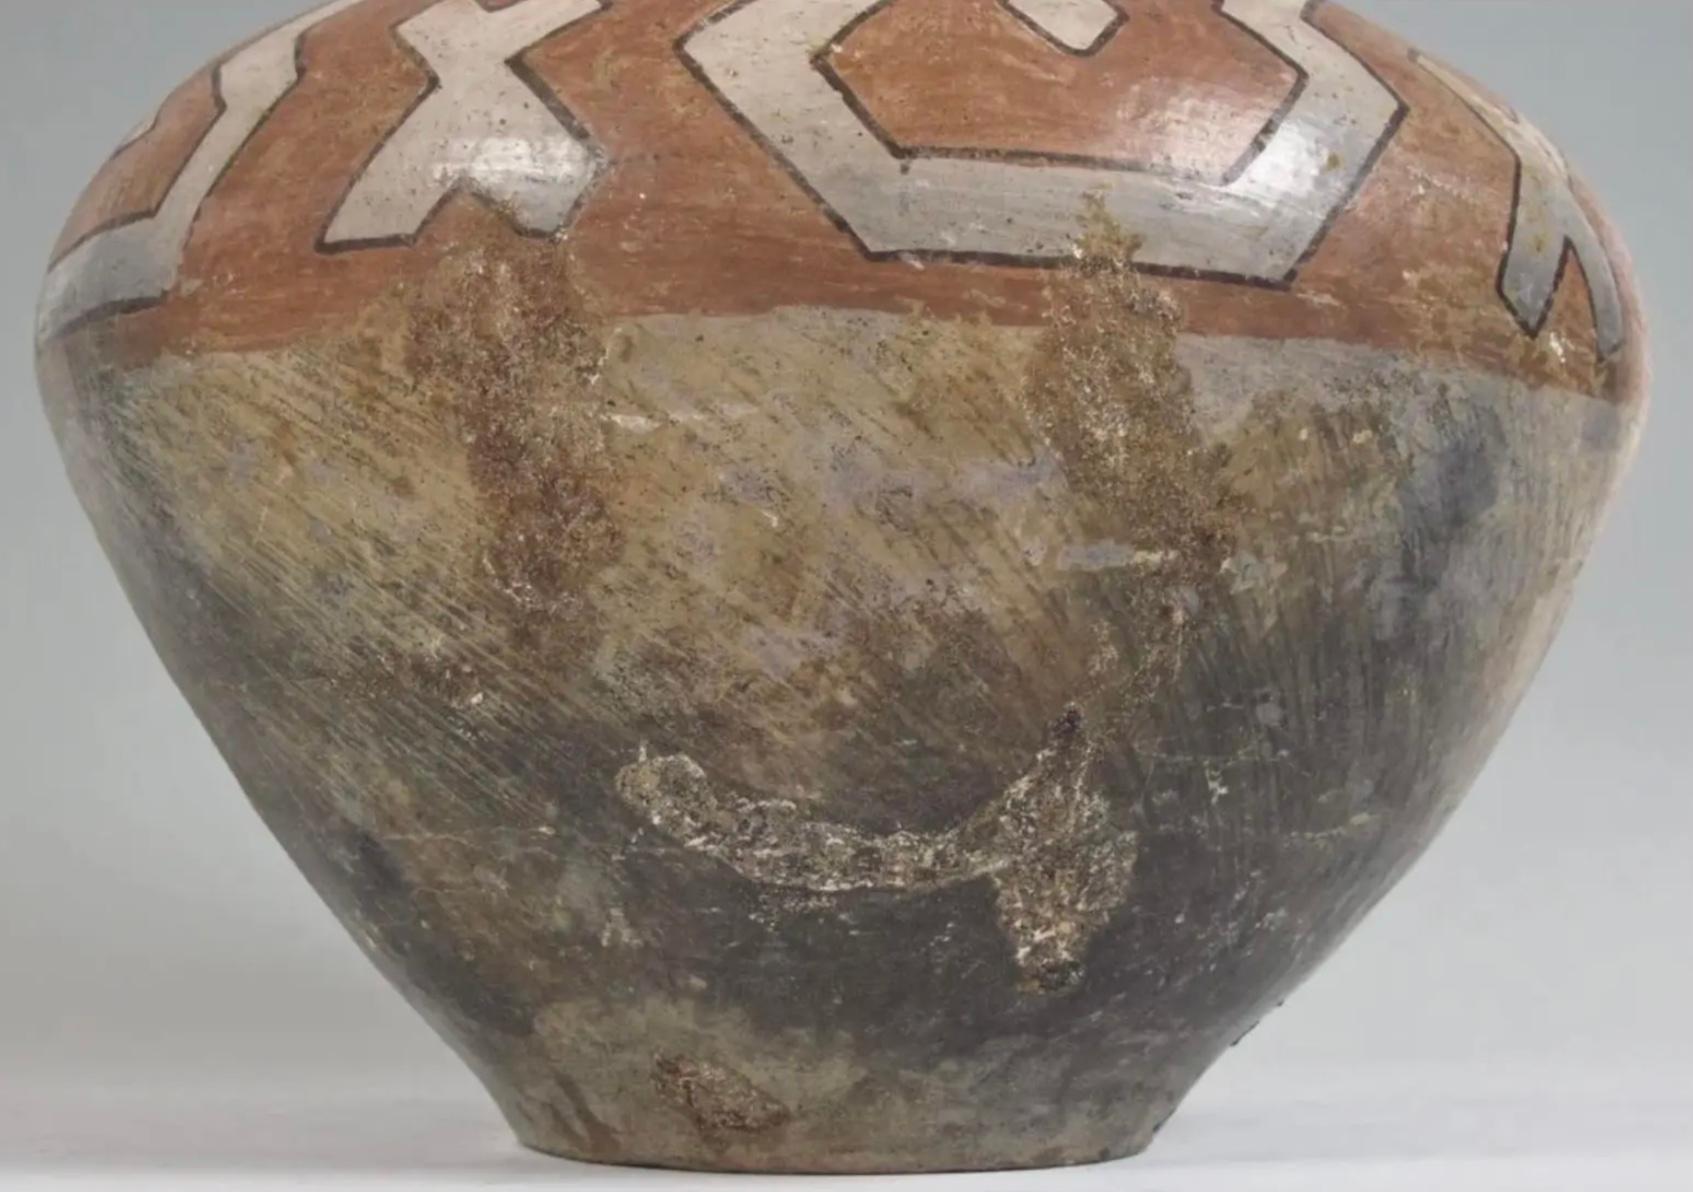 Grand pot en céramique péruvien Shipibo polychrome et géométrique. Ce type de grands pots en terre cuite à engobe était traditionnellement utilisé comme récipient de stockage de la bière lors des cérémonies communautaires. Les Shipibo de la rivière